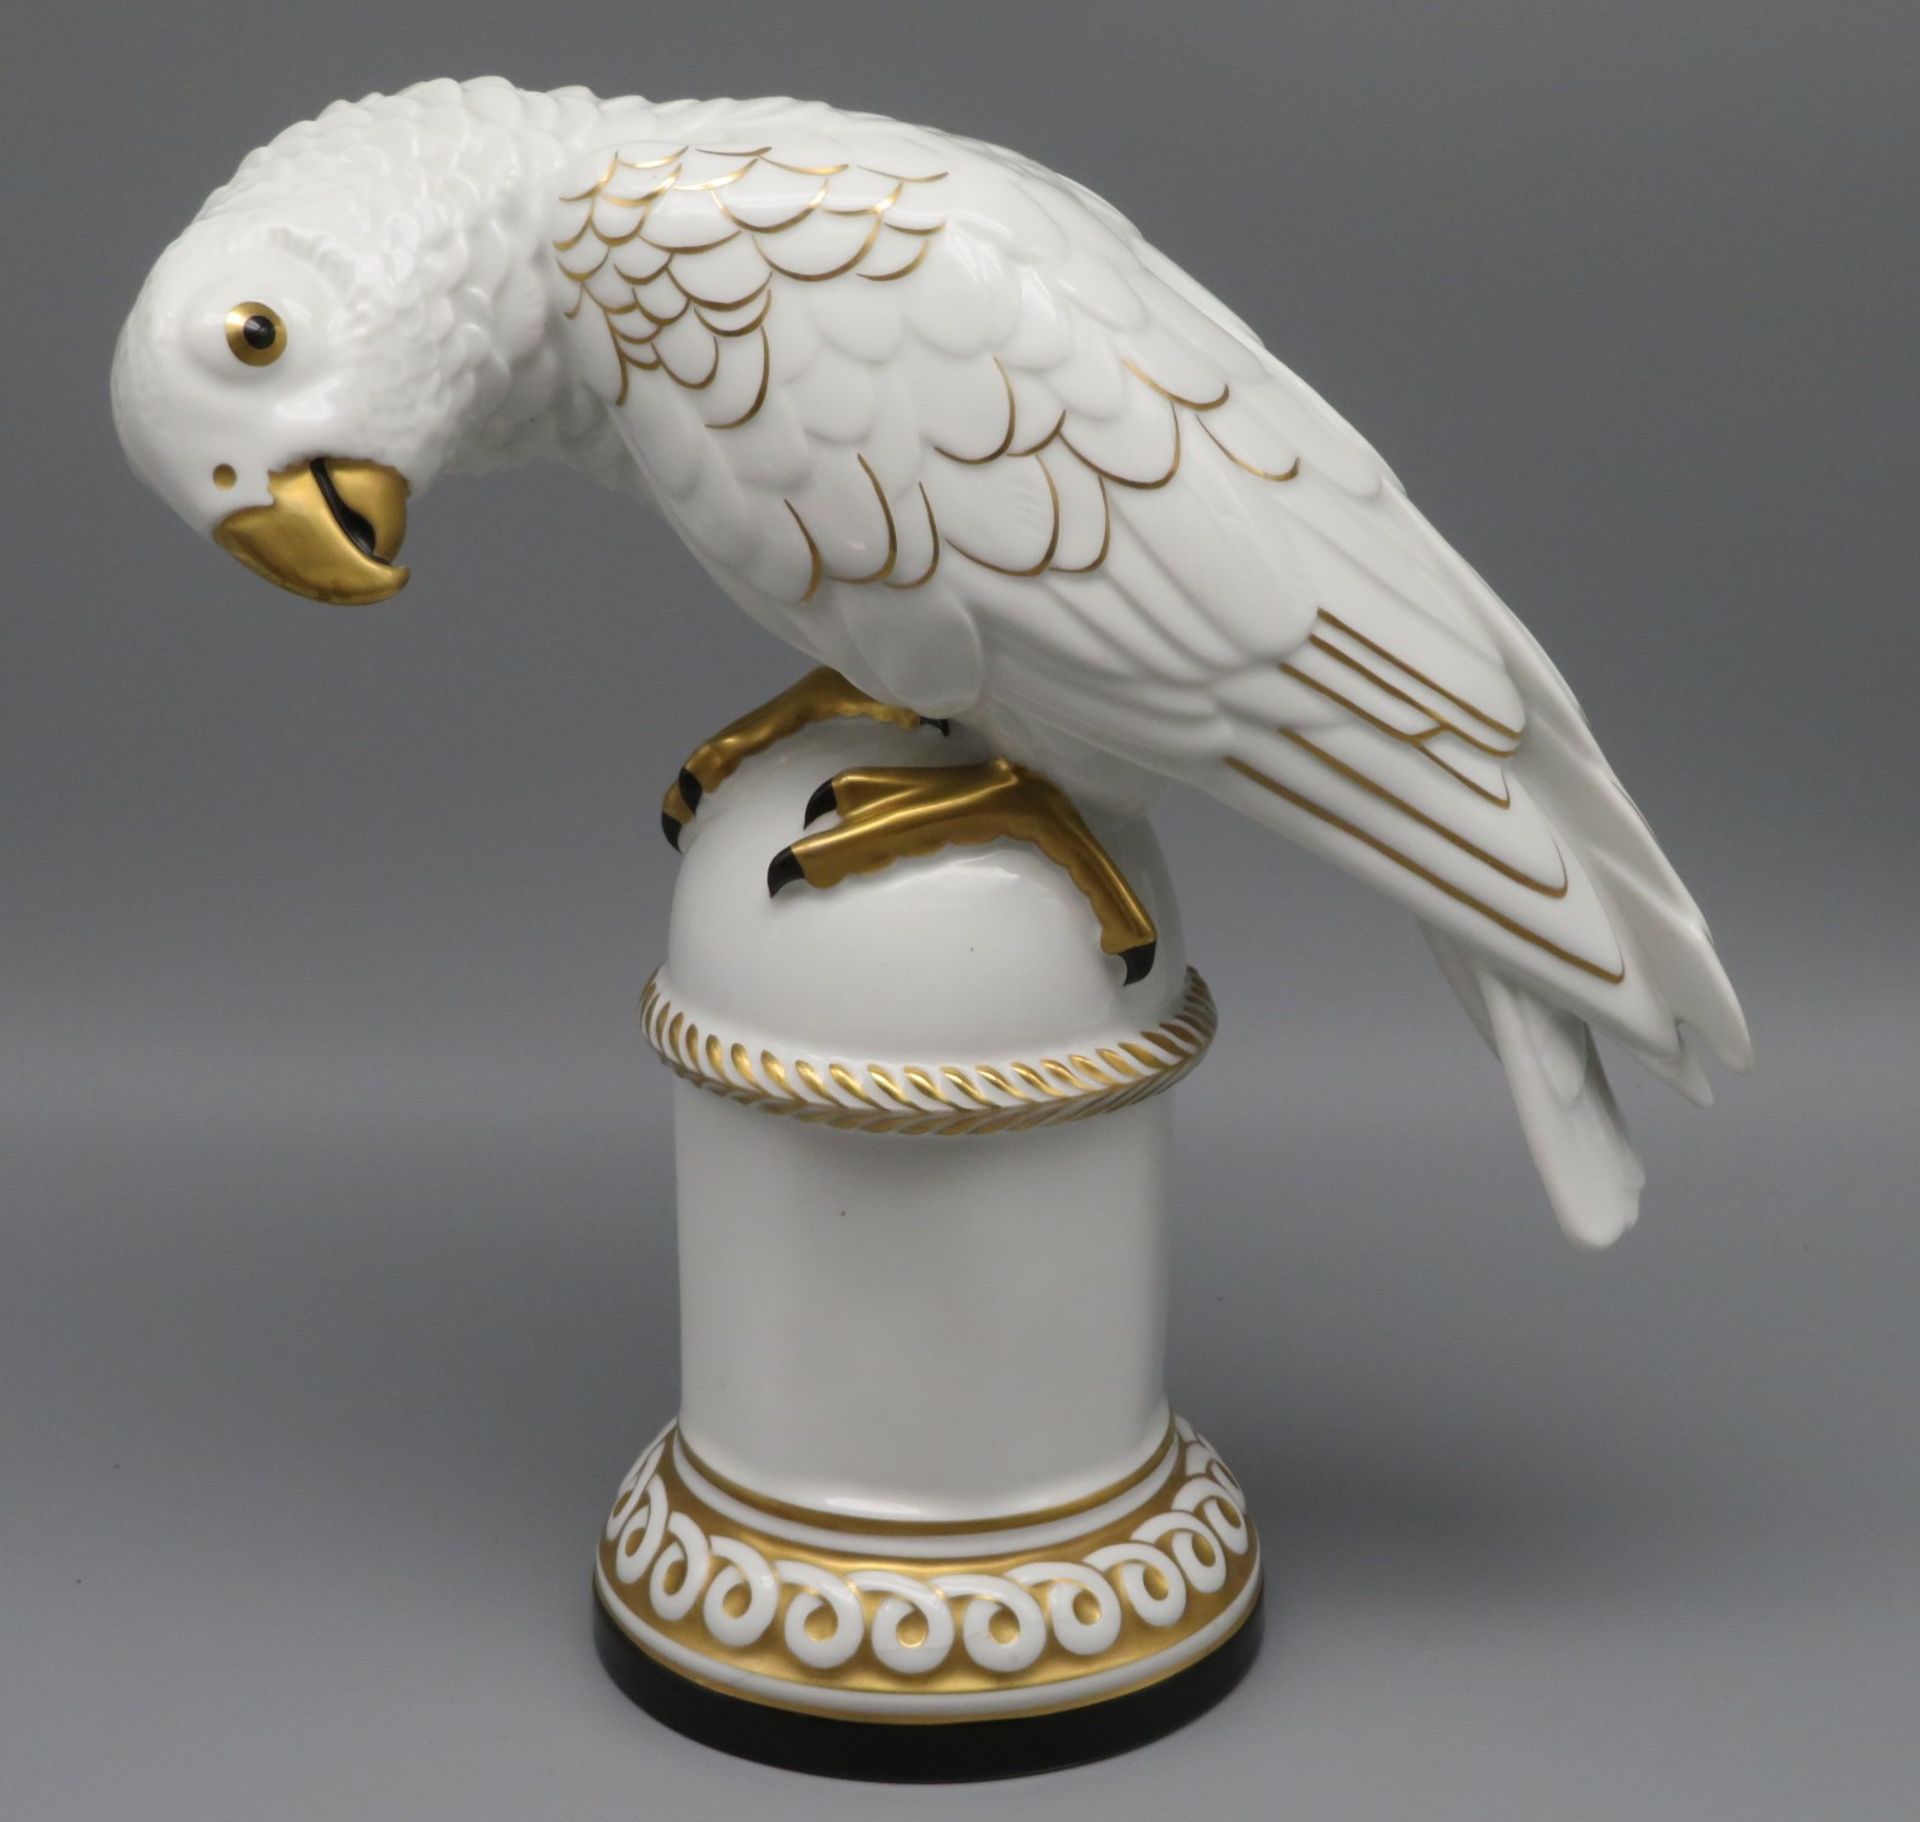 Porzellanfigur, Papagei auf Sockel thronend, Porzellanfabrik Zeh, Scherzer & Co, Entwurf A. Billman